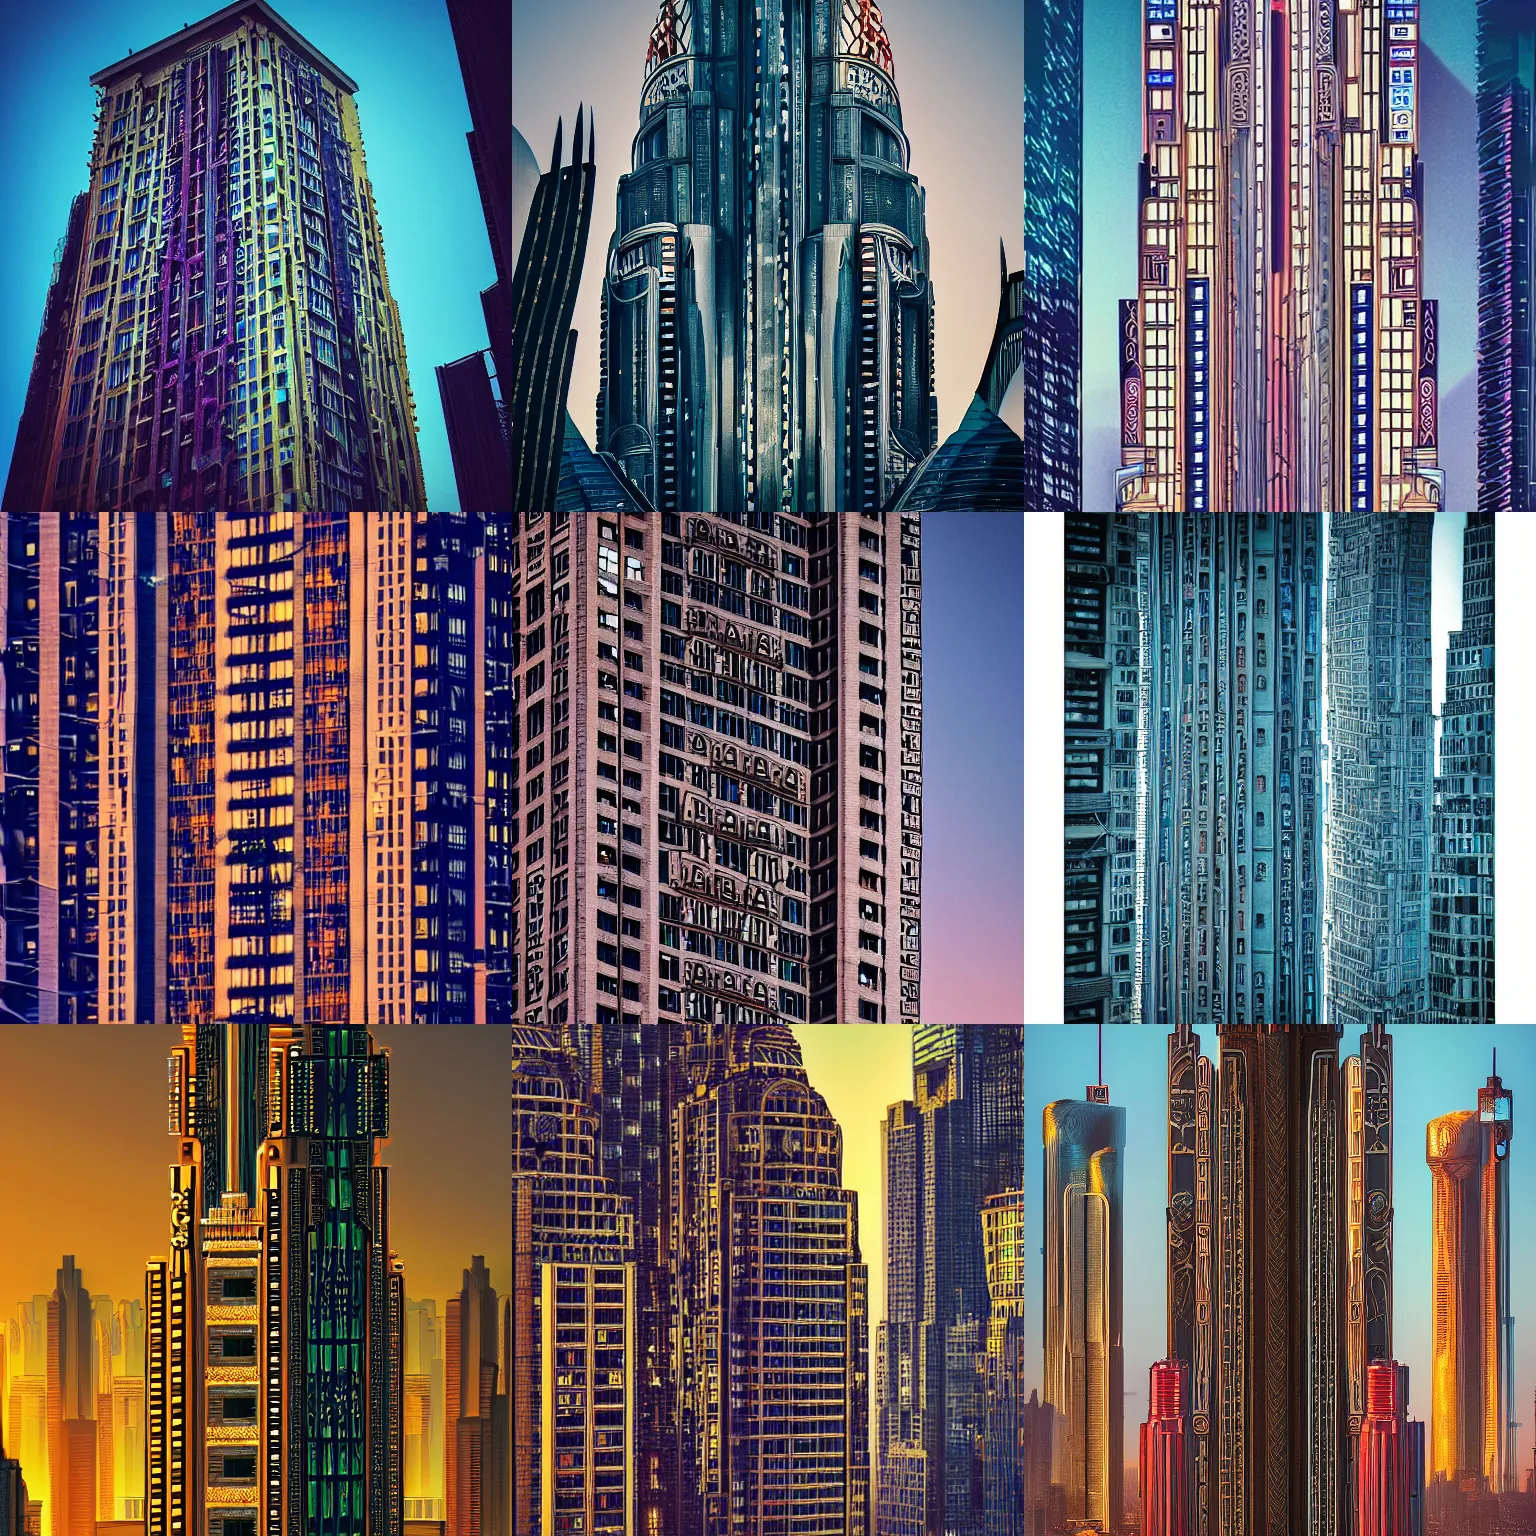 Prompt: beautiful photo of a richly ornamented cyberpunk Art Deco skyscraper at dawn